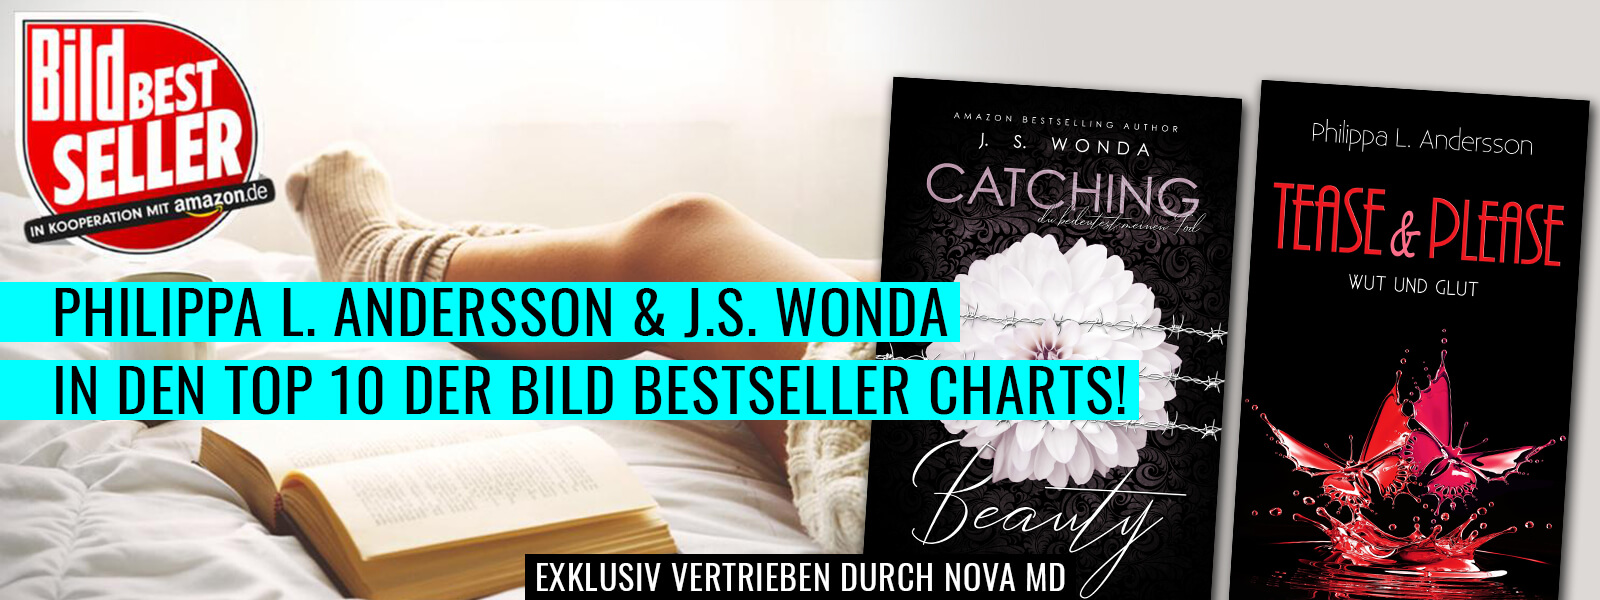 J.s. Wonda und Philippa L. Andersson Bild-Bestseller